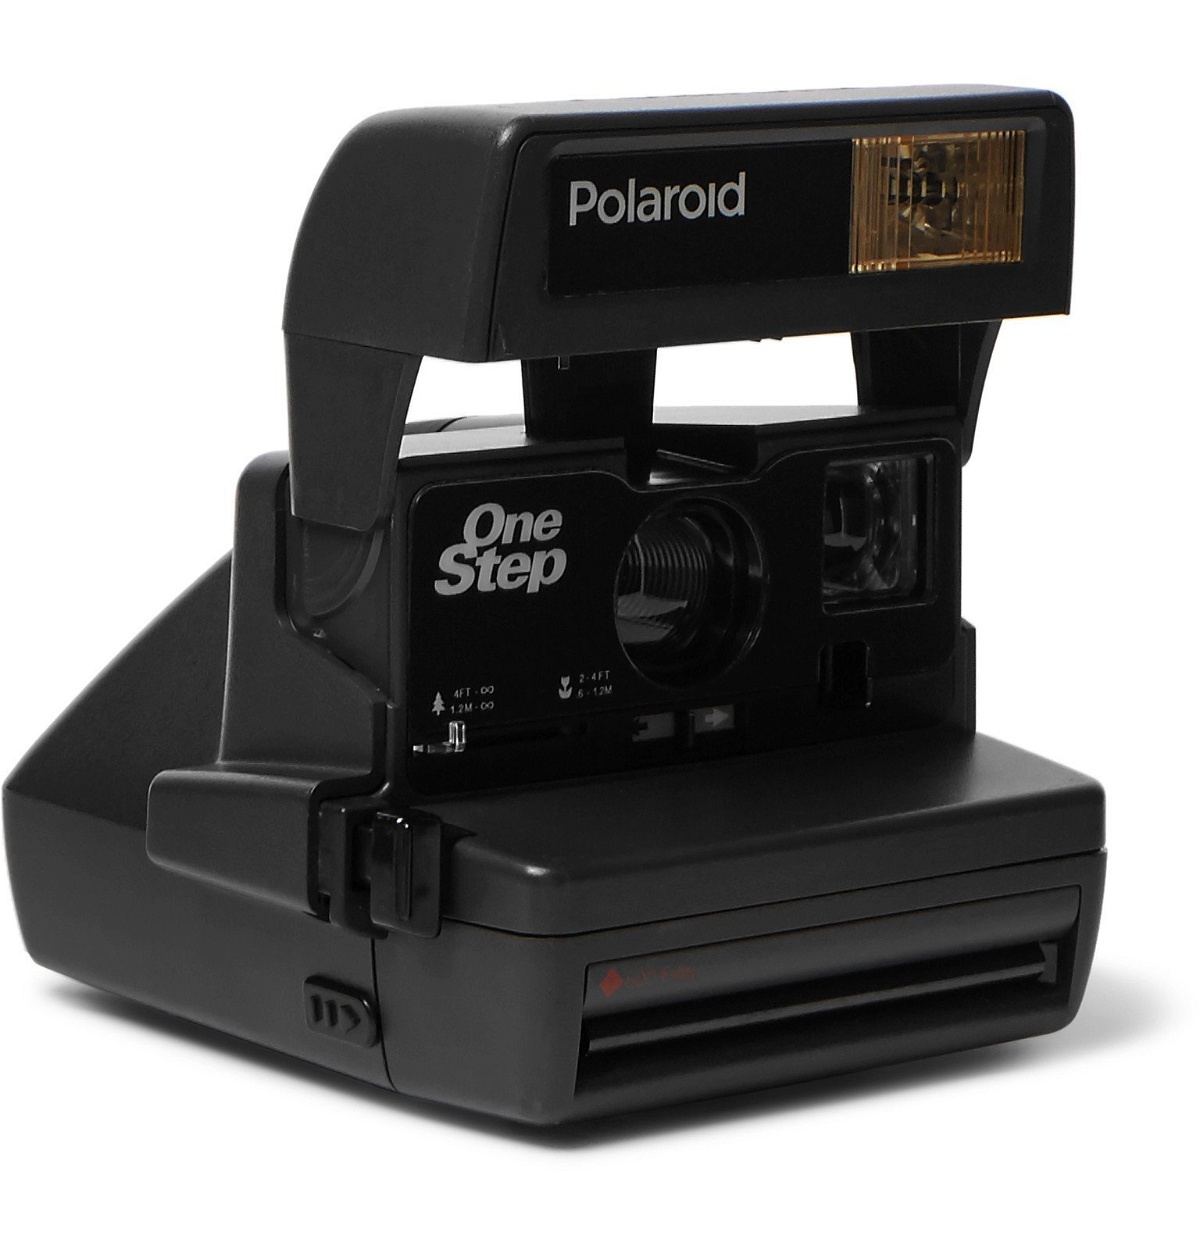 Estimar Imperio limpiar Polaroid Originals - OneStep 600 Camera - Black Polaroid Originals